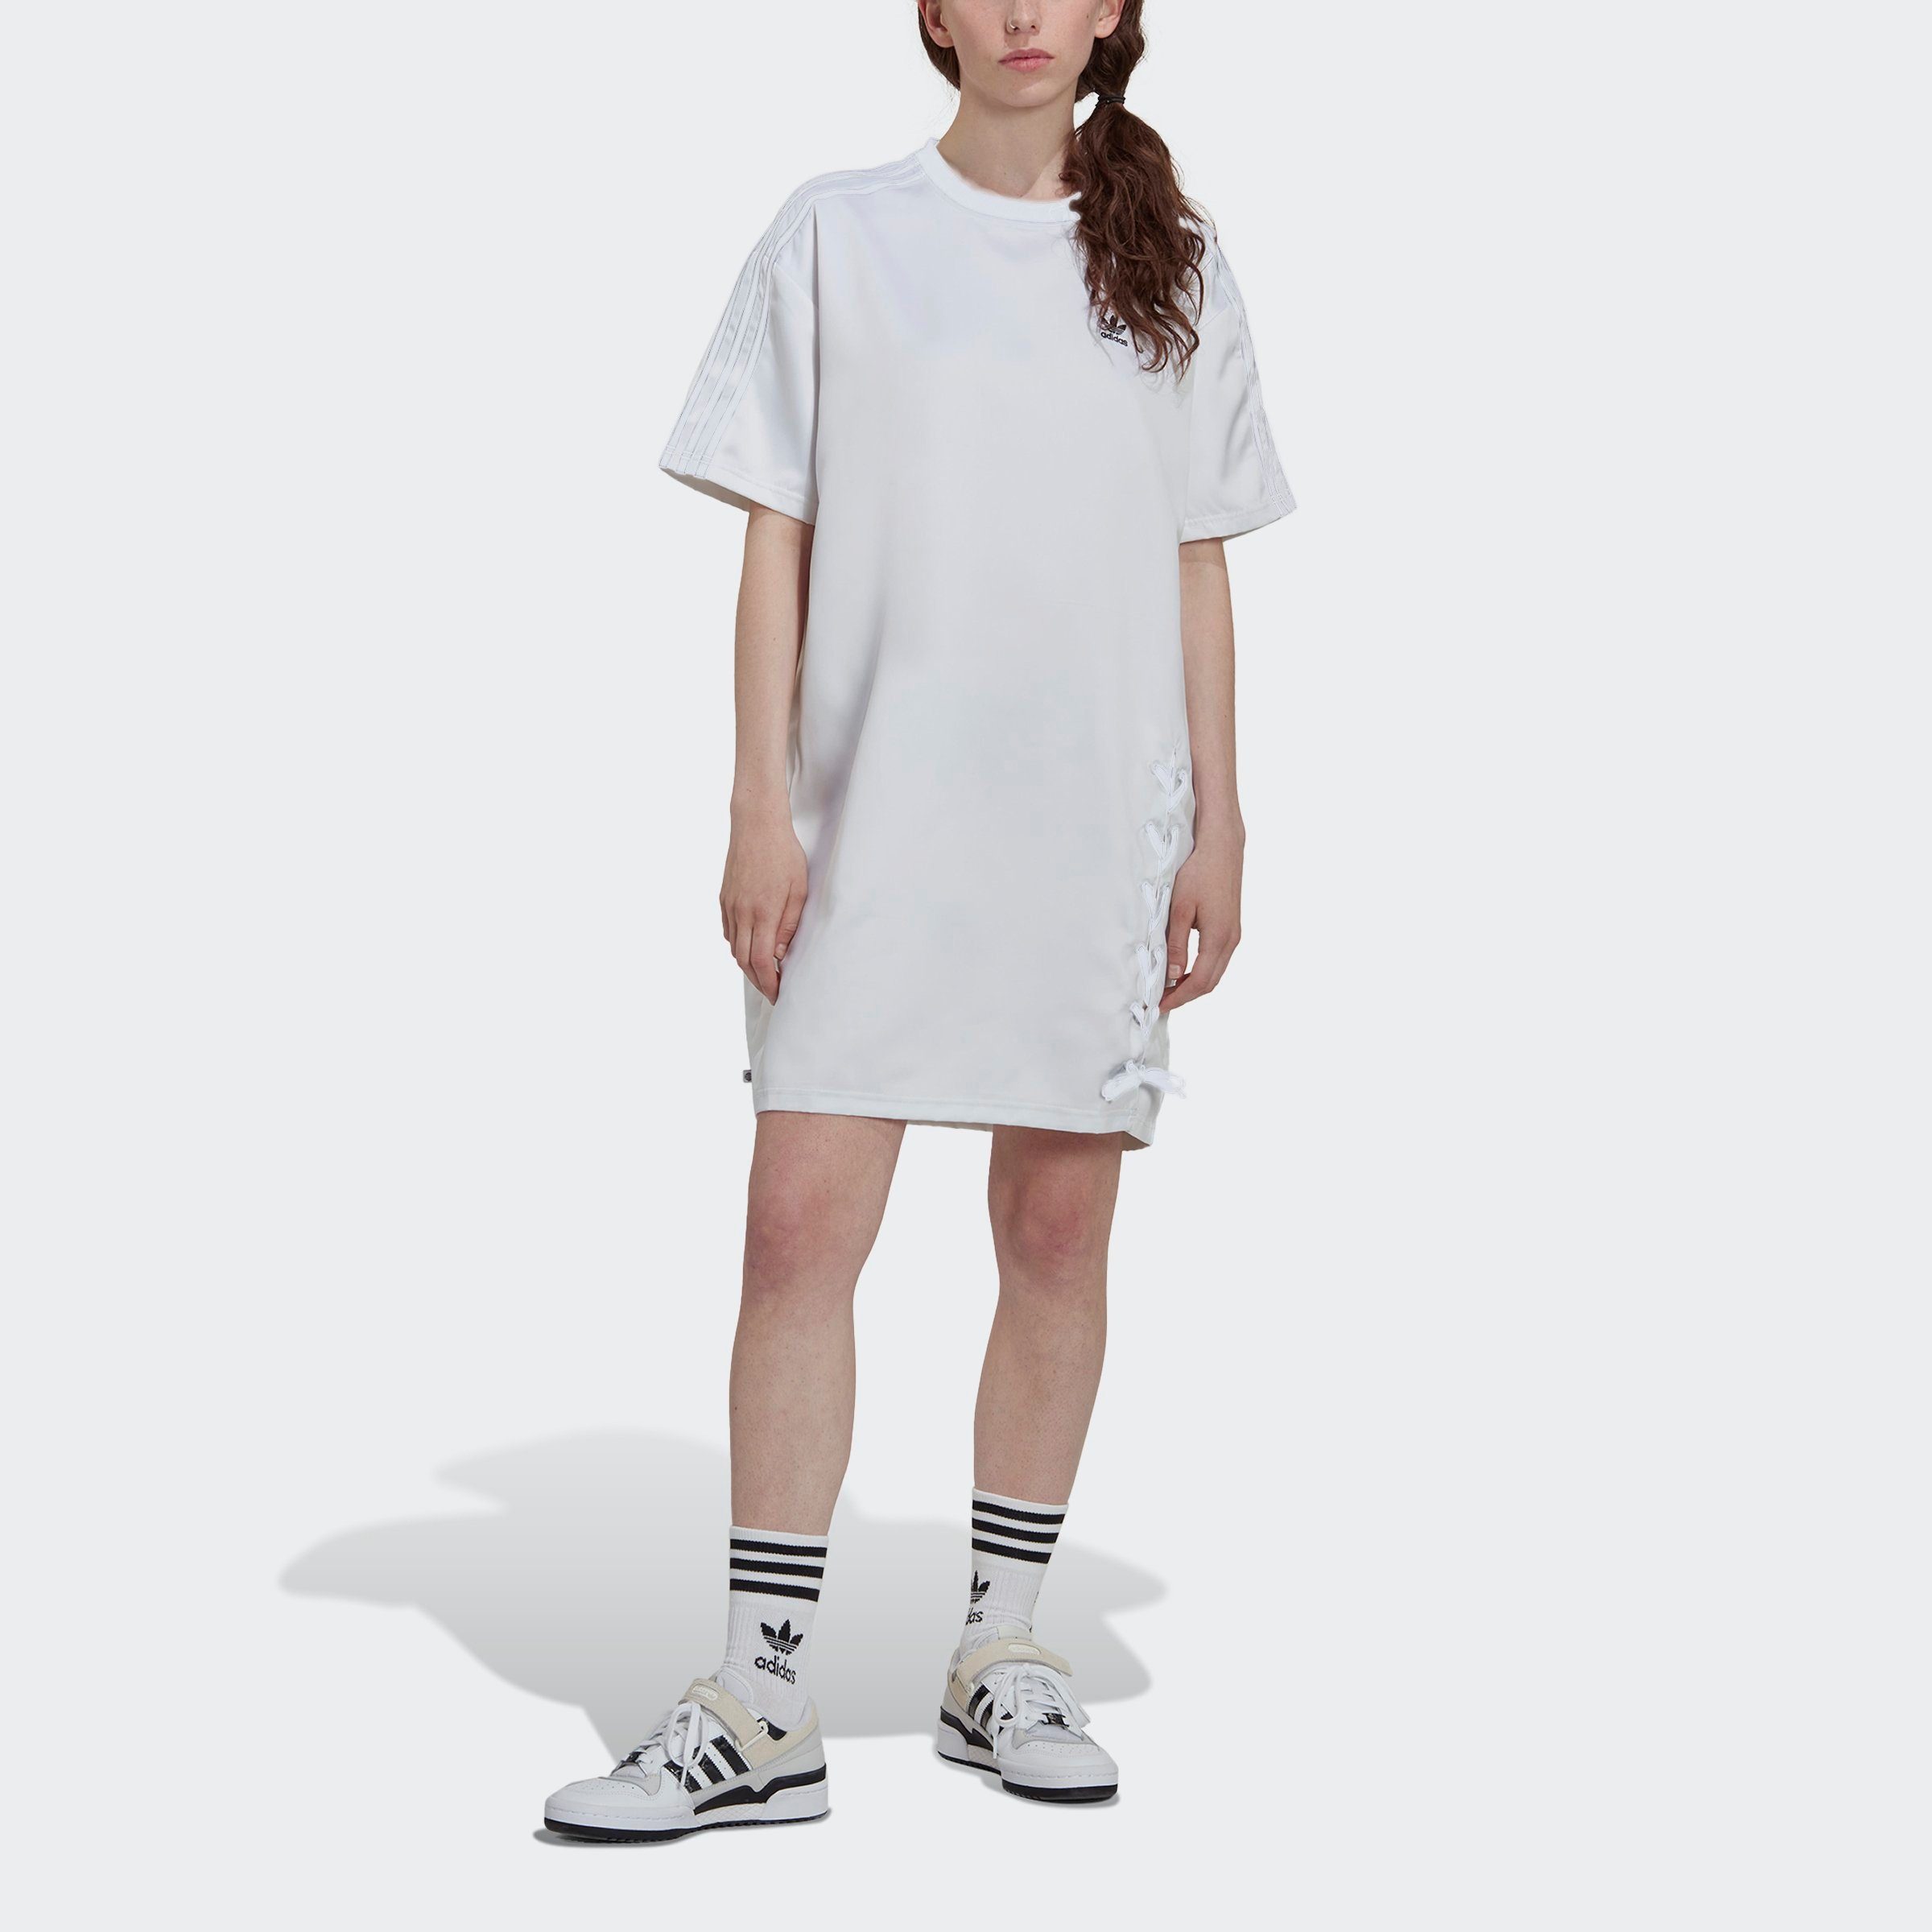 Direktversand von Produkten adidas Originals Sommerkleid ALWAYS ORIGINAL -KLEID WHITE LACED